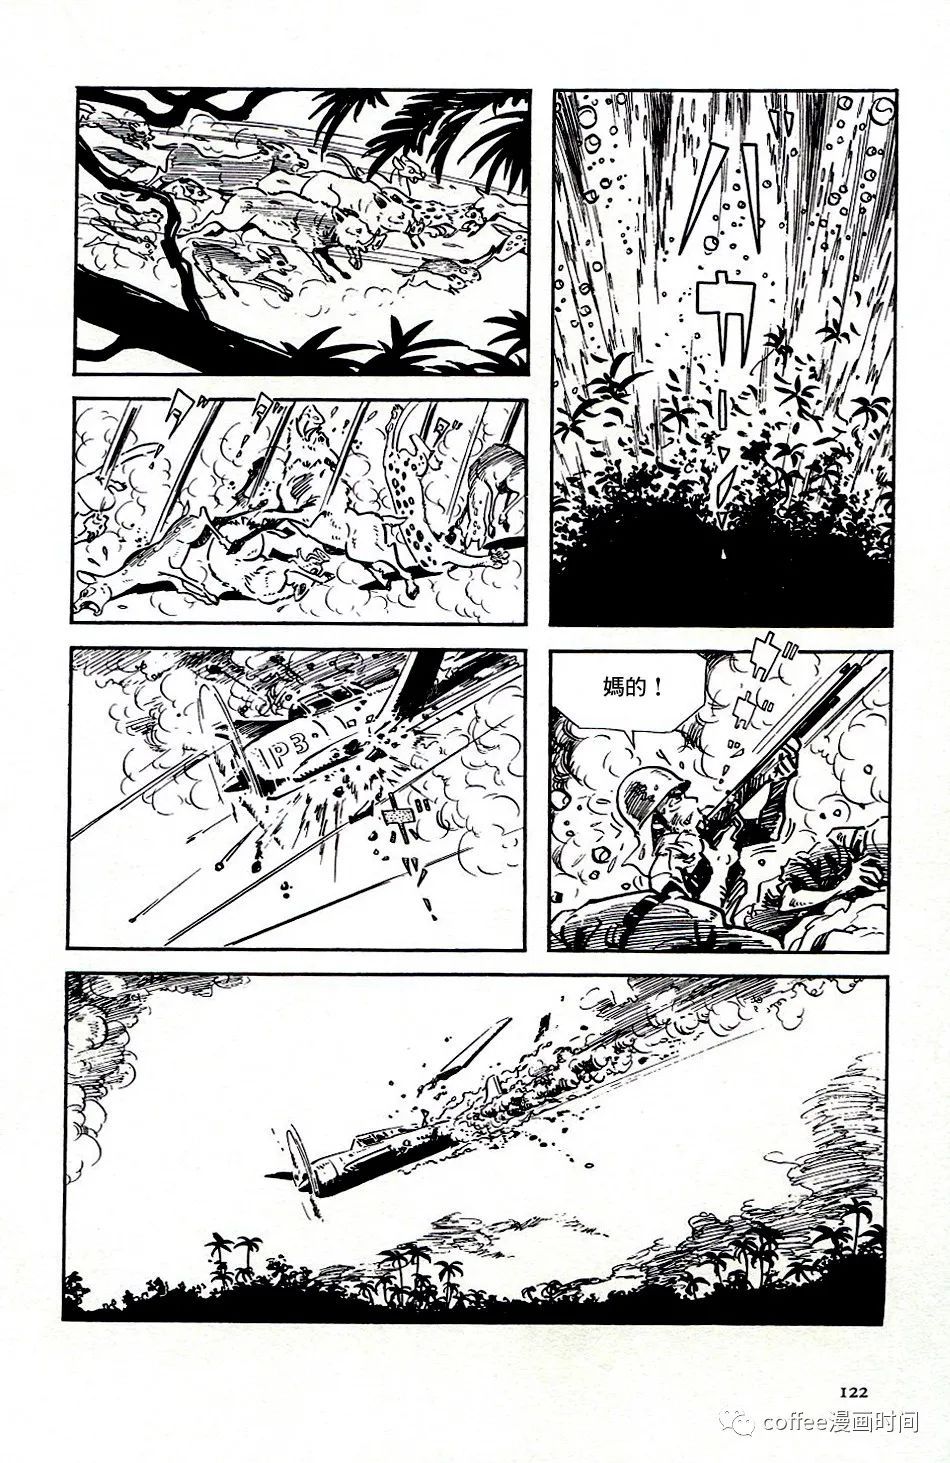 日本短篇漫畫傑作集 - 白土三平《戰爭》 - 5